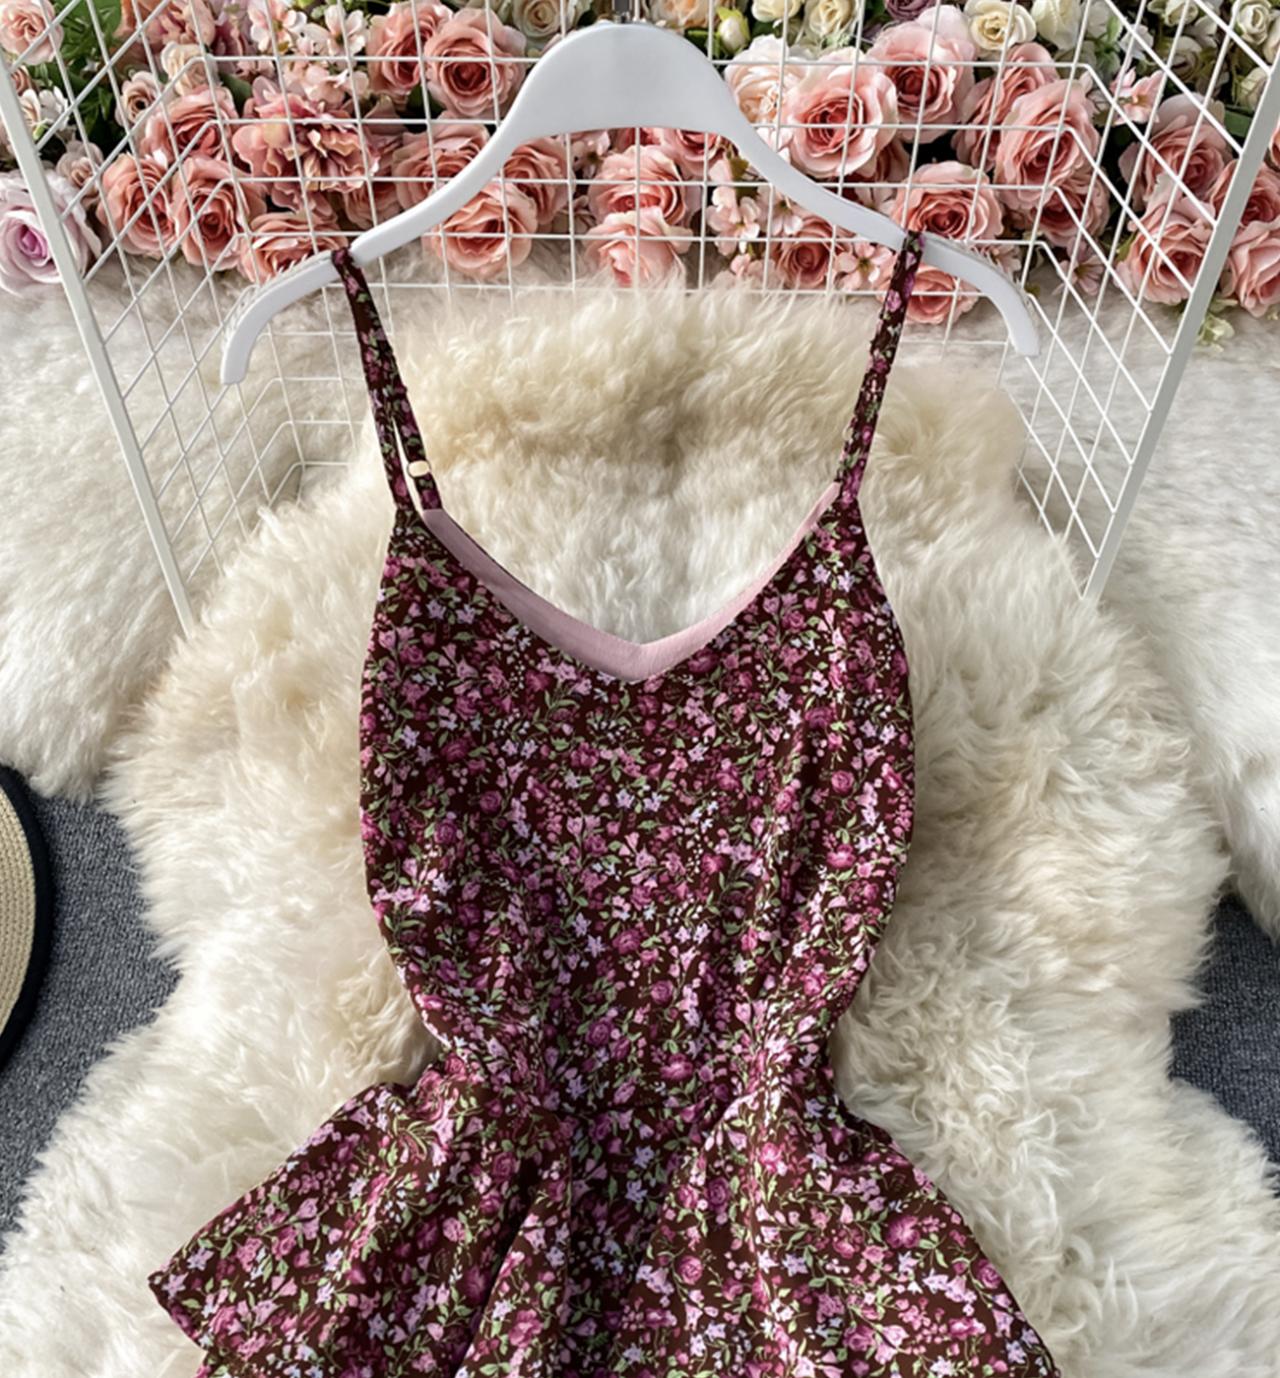 Cute A line floral dress  815